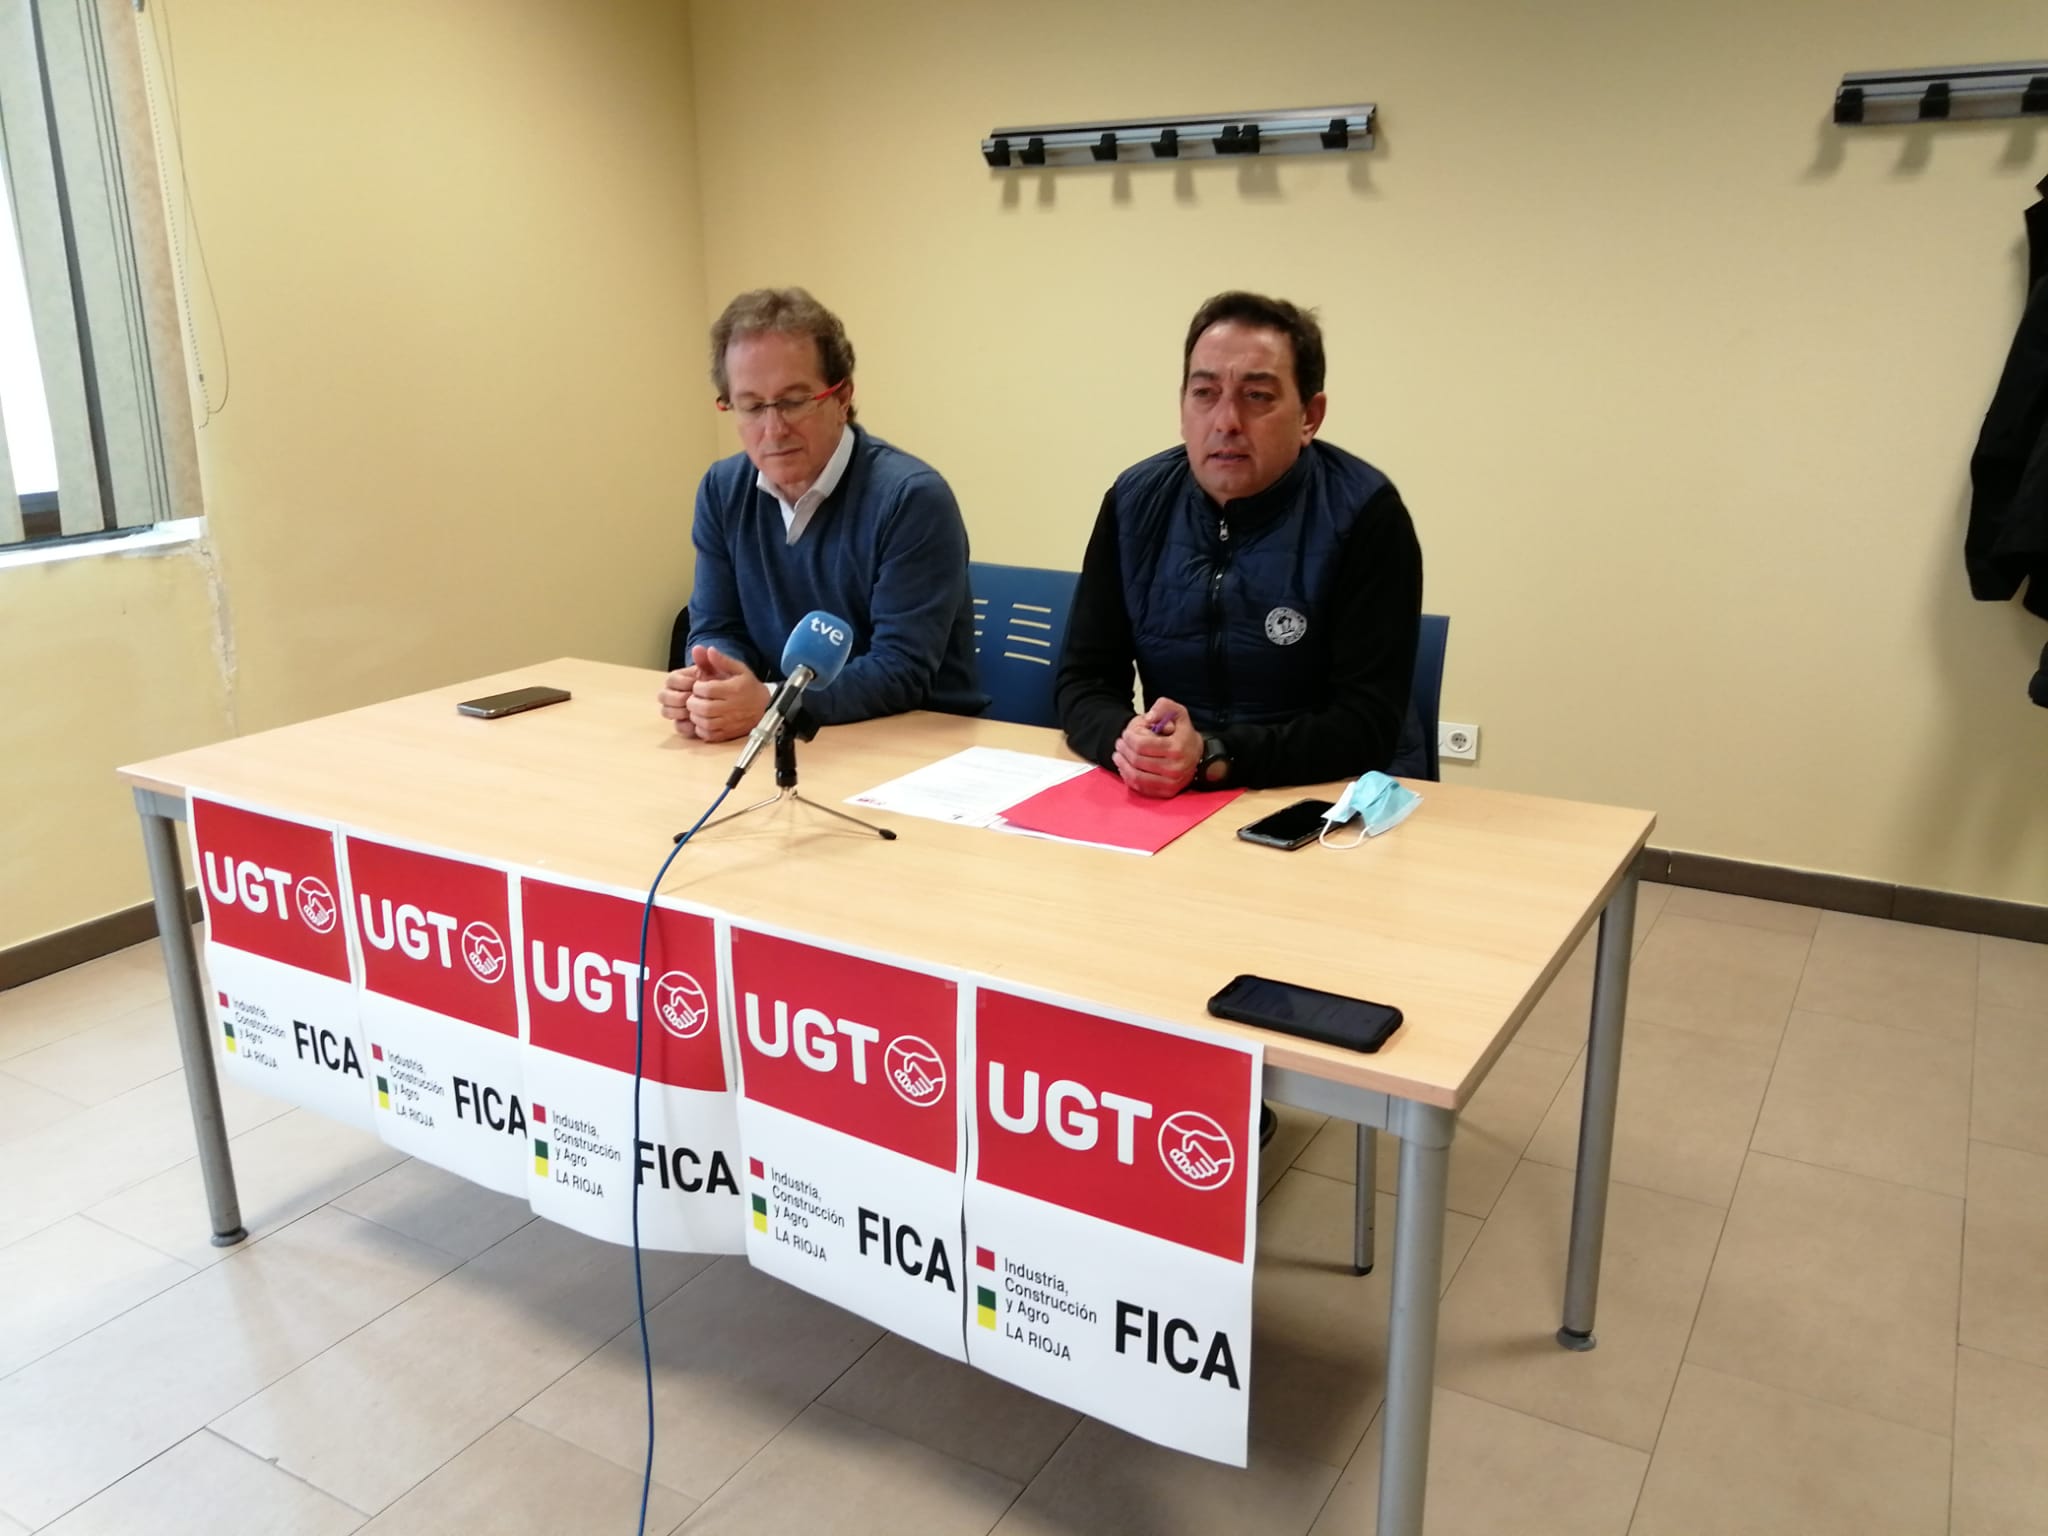 UGT FICA La Rioja celebra la primera jornada sindical de la escuela Manuel Fernández López “Lito”